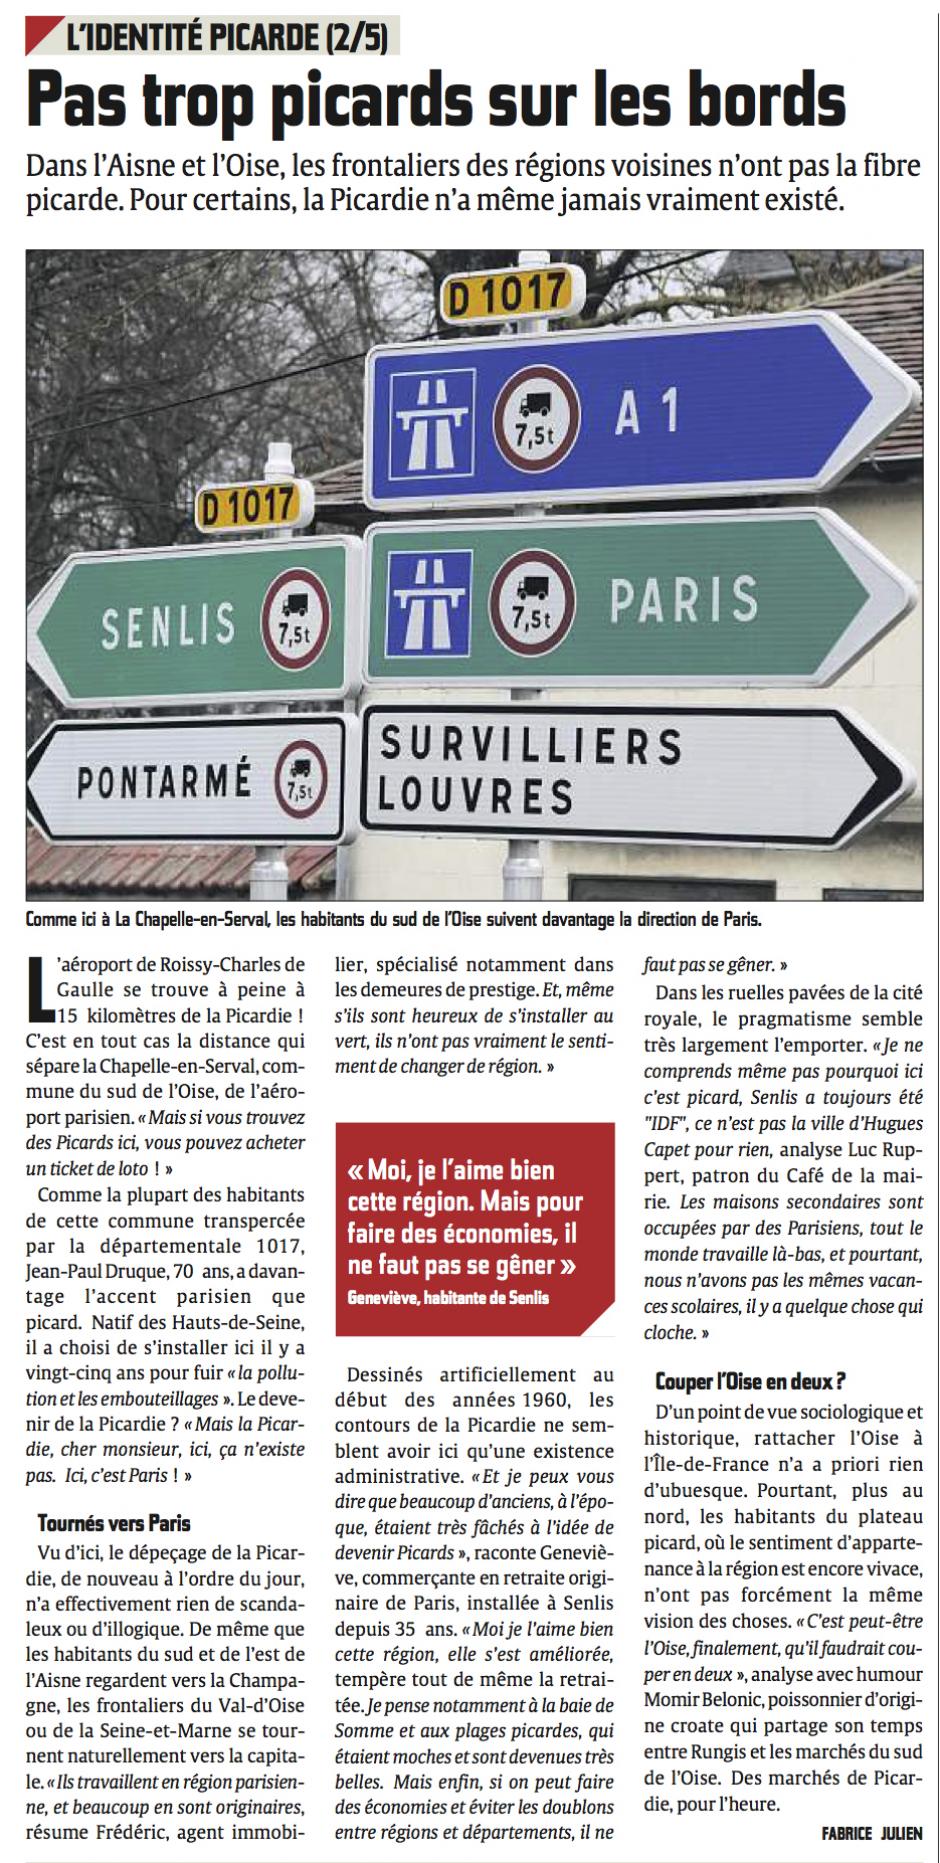 20140128-CP-Picardie-L'identité picarde 2/5 : pas trop picards sur les bords